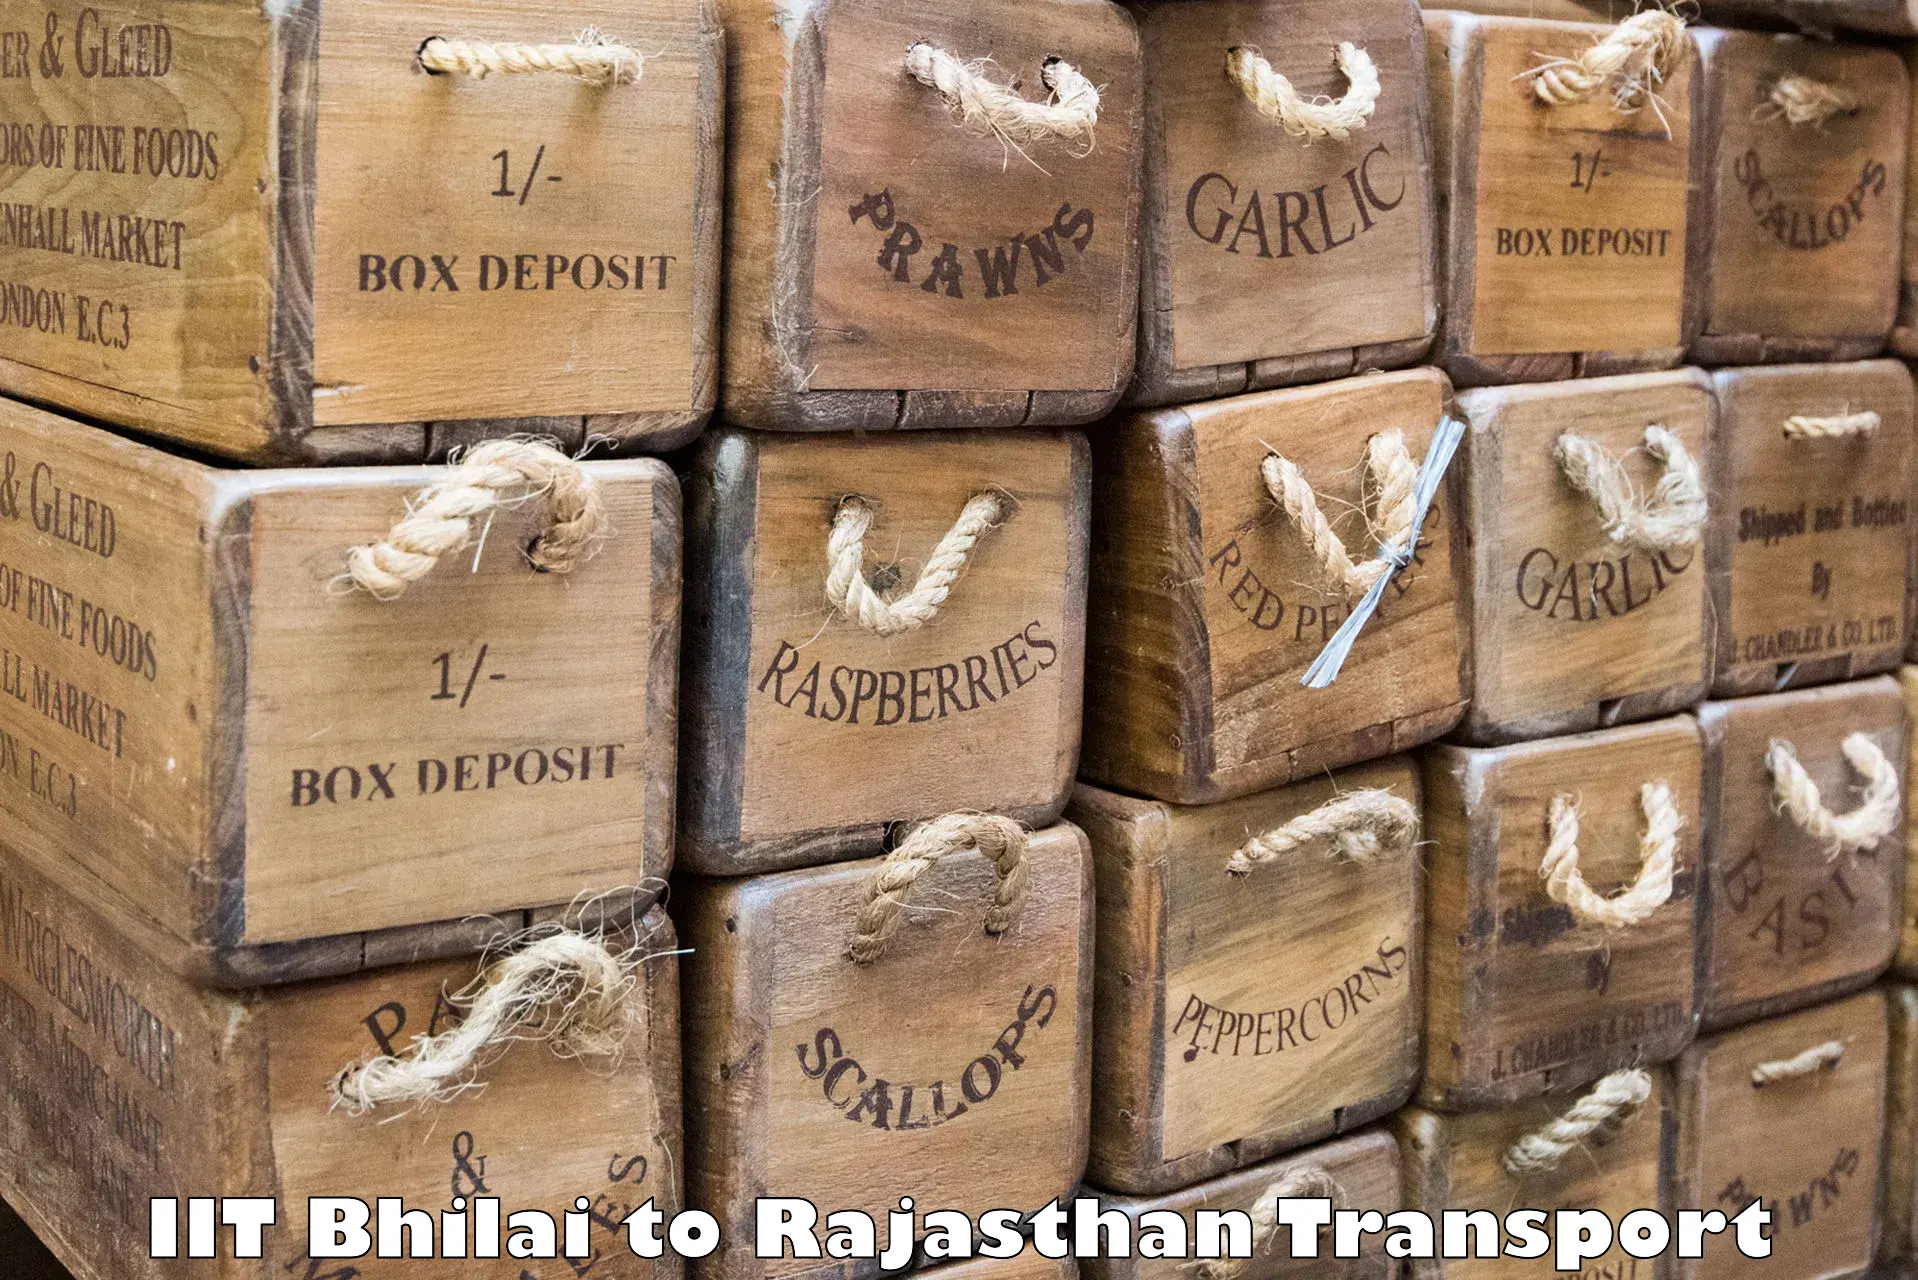 Furniture transport service IIT Bhilai to Jaipur